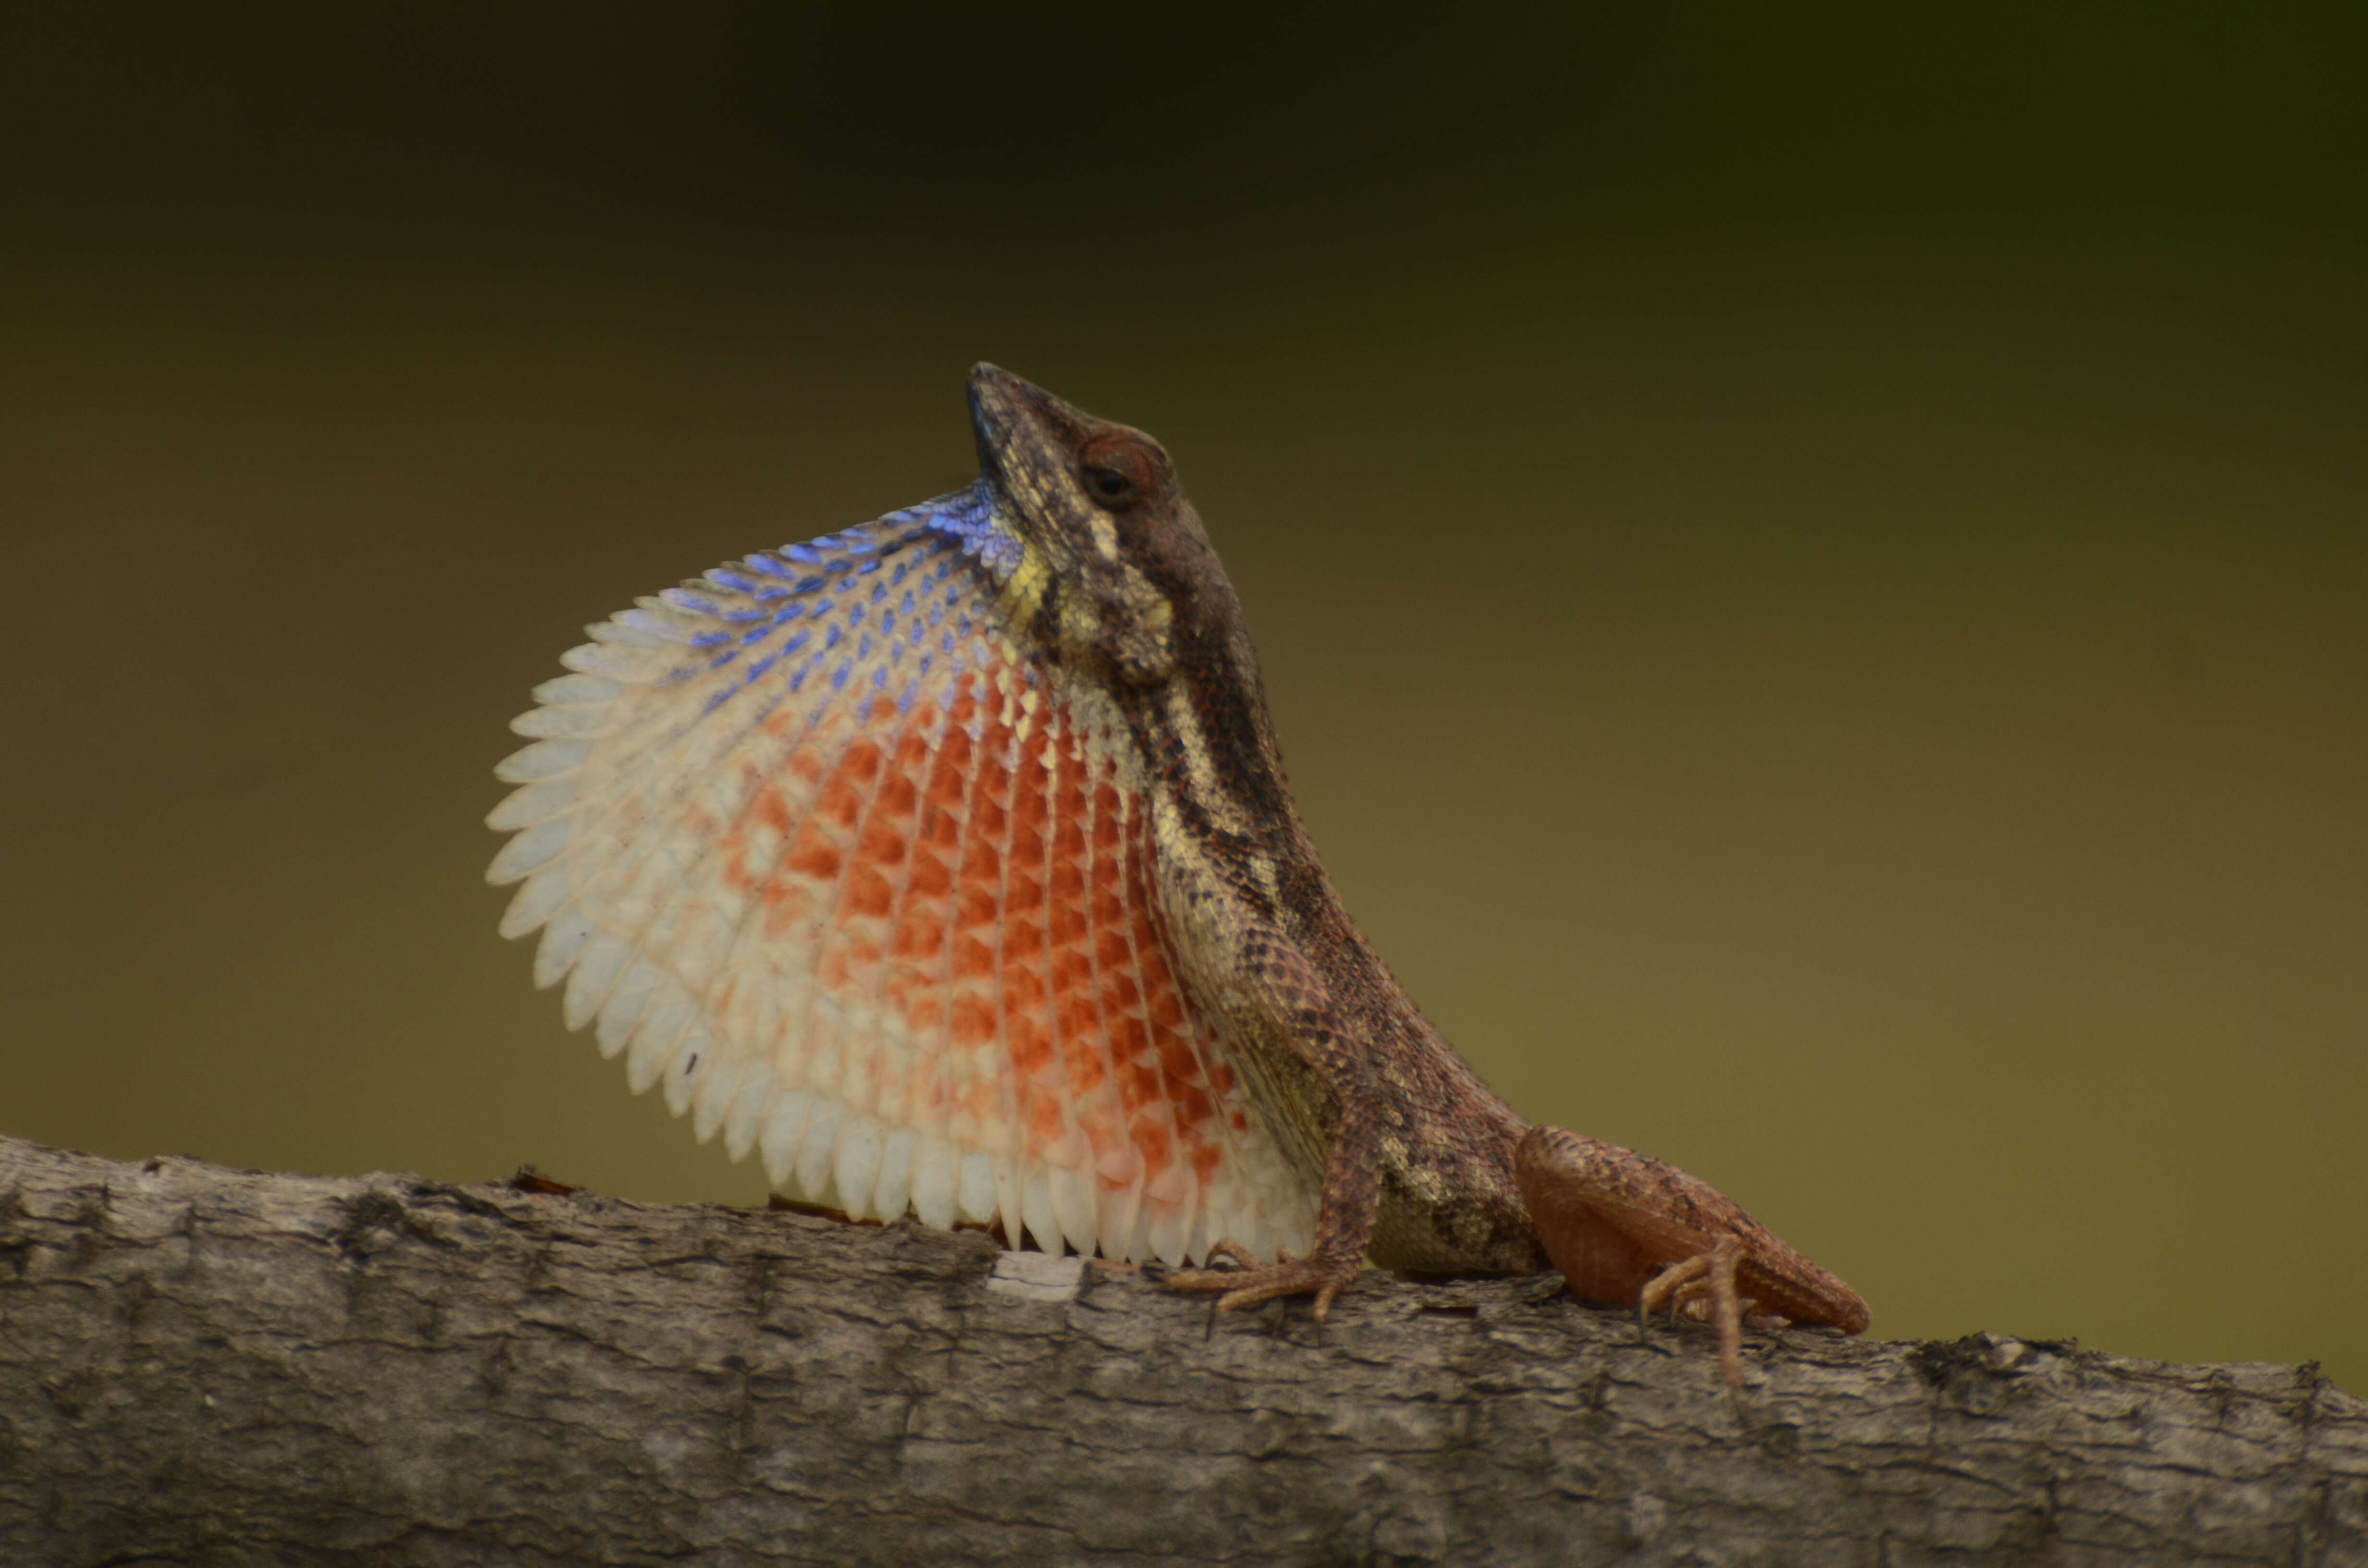 Image of Fan Throated Lizard